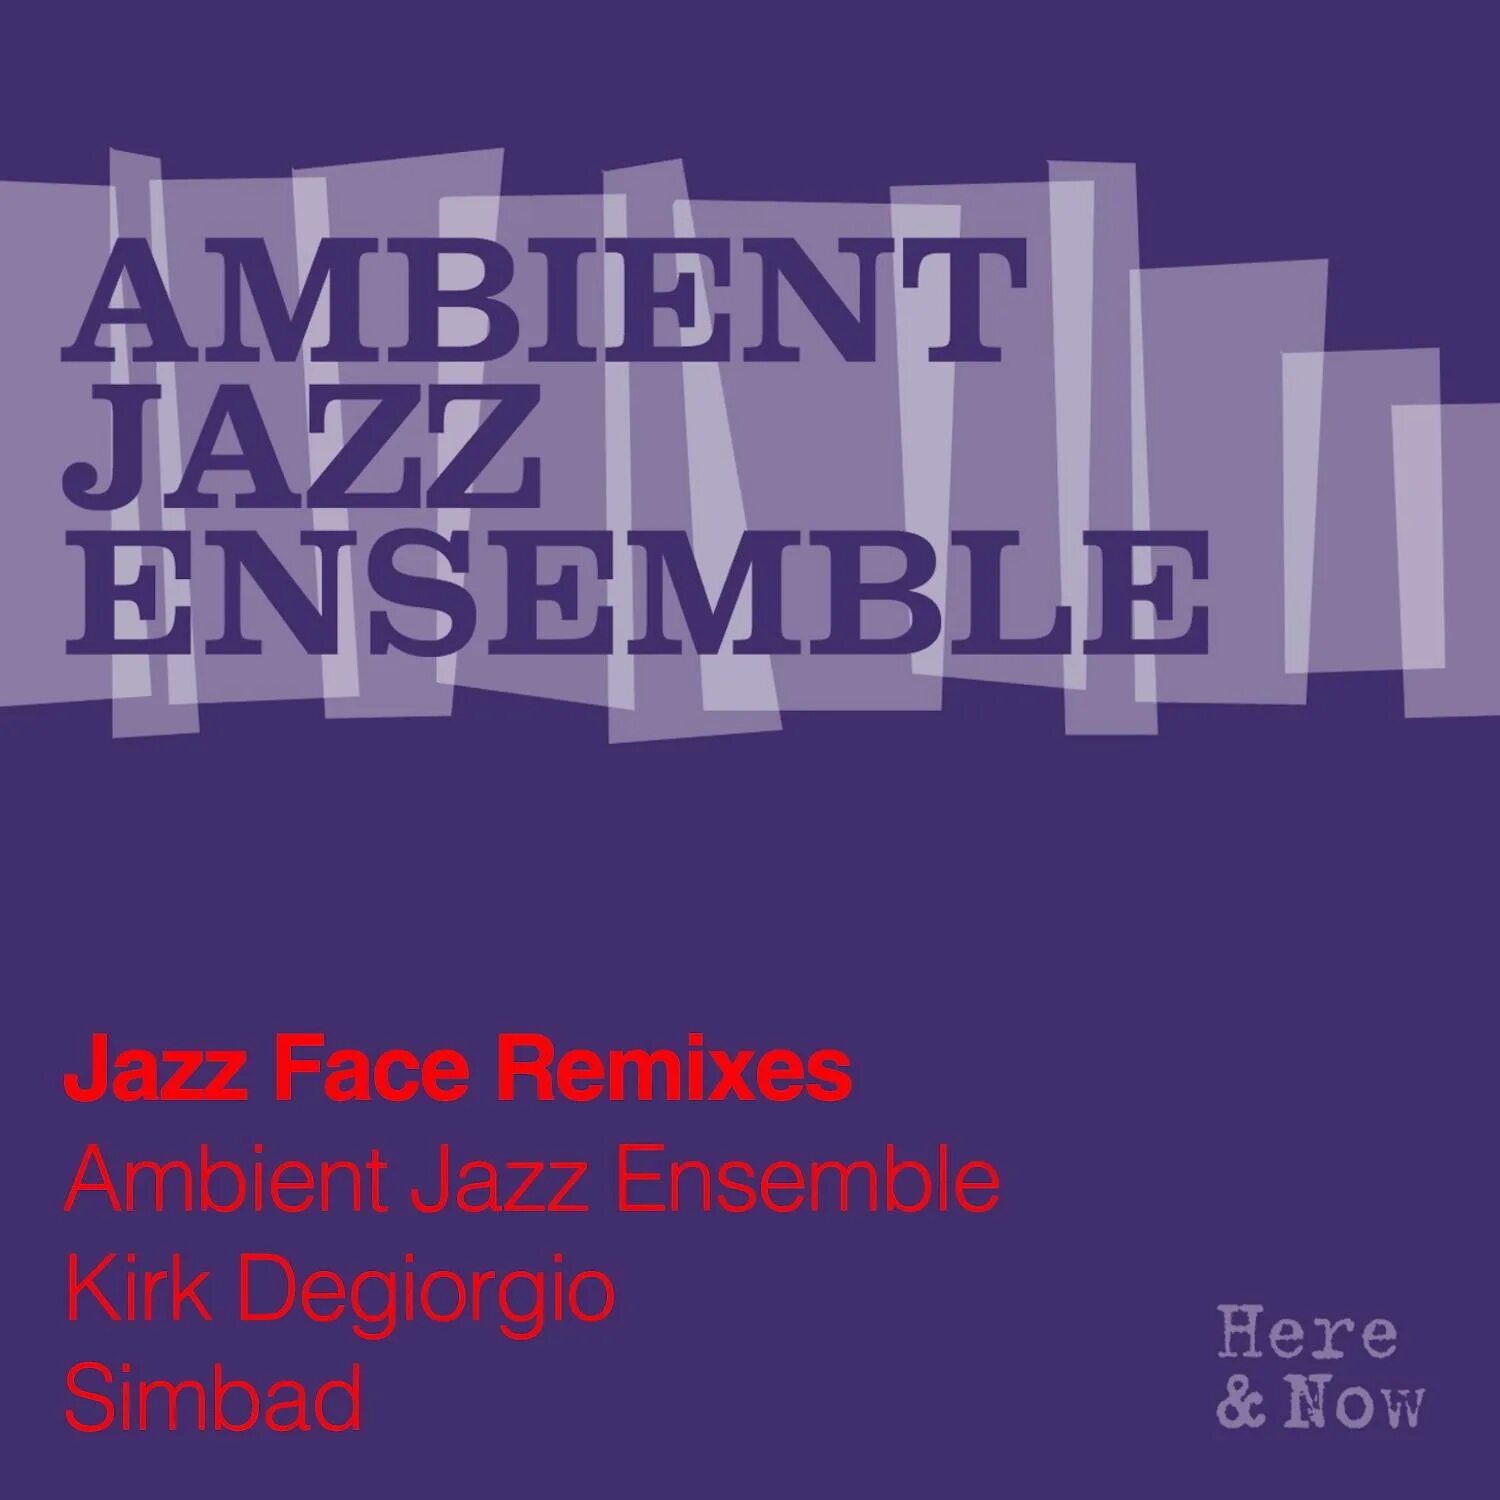 Ambient Jazz Ensemble. Jazz face. Ambient Jazz группы. Jazz Ensemble score photo.